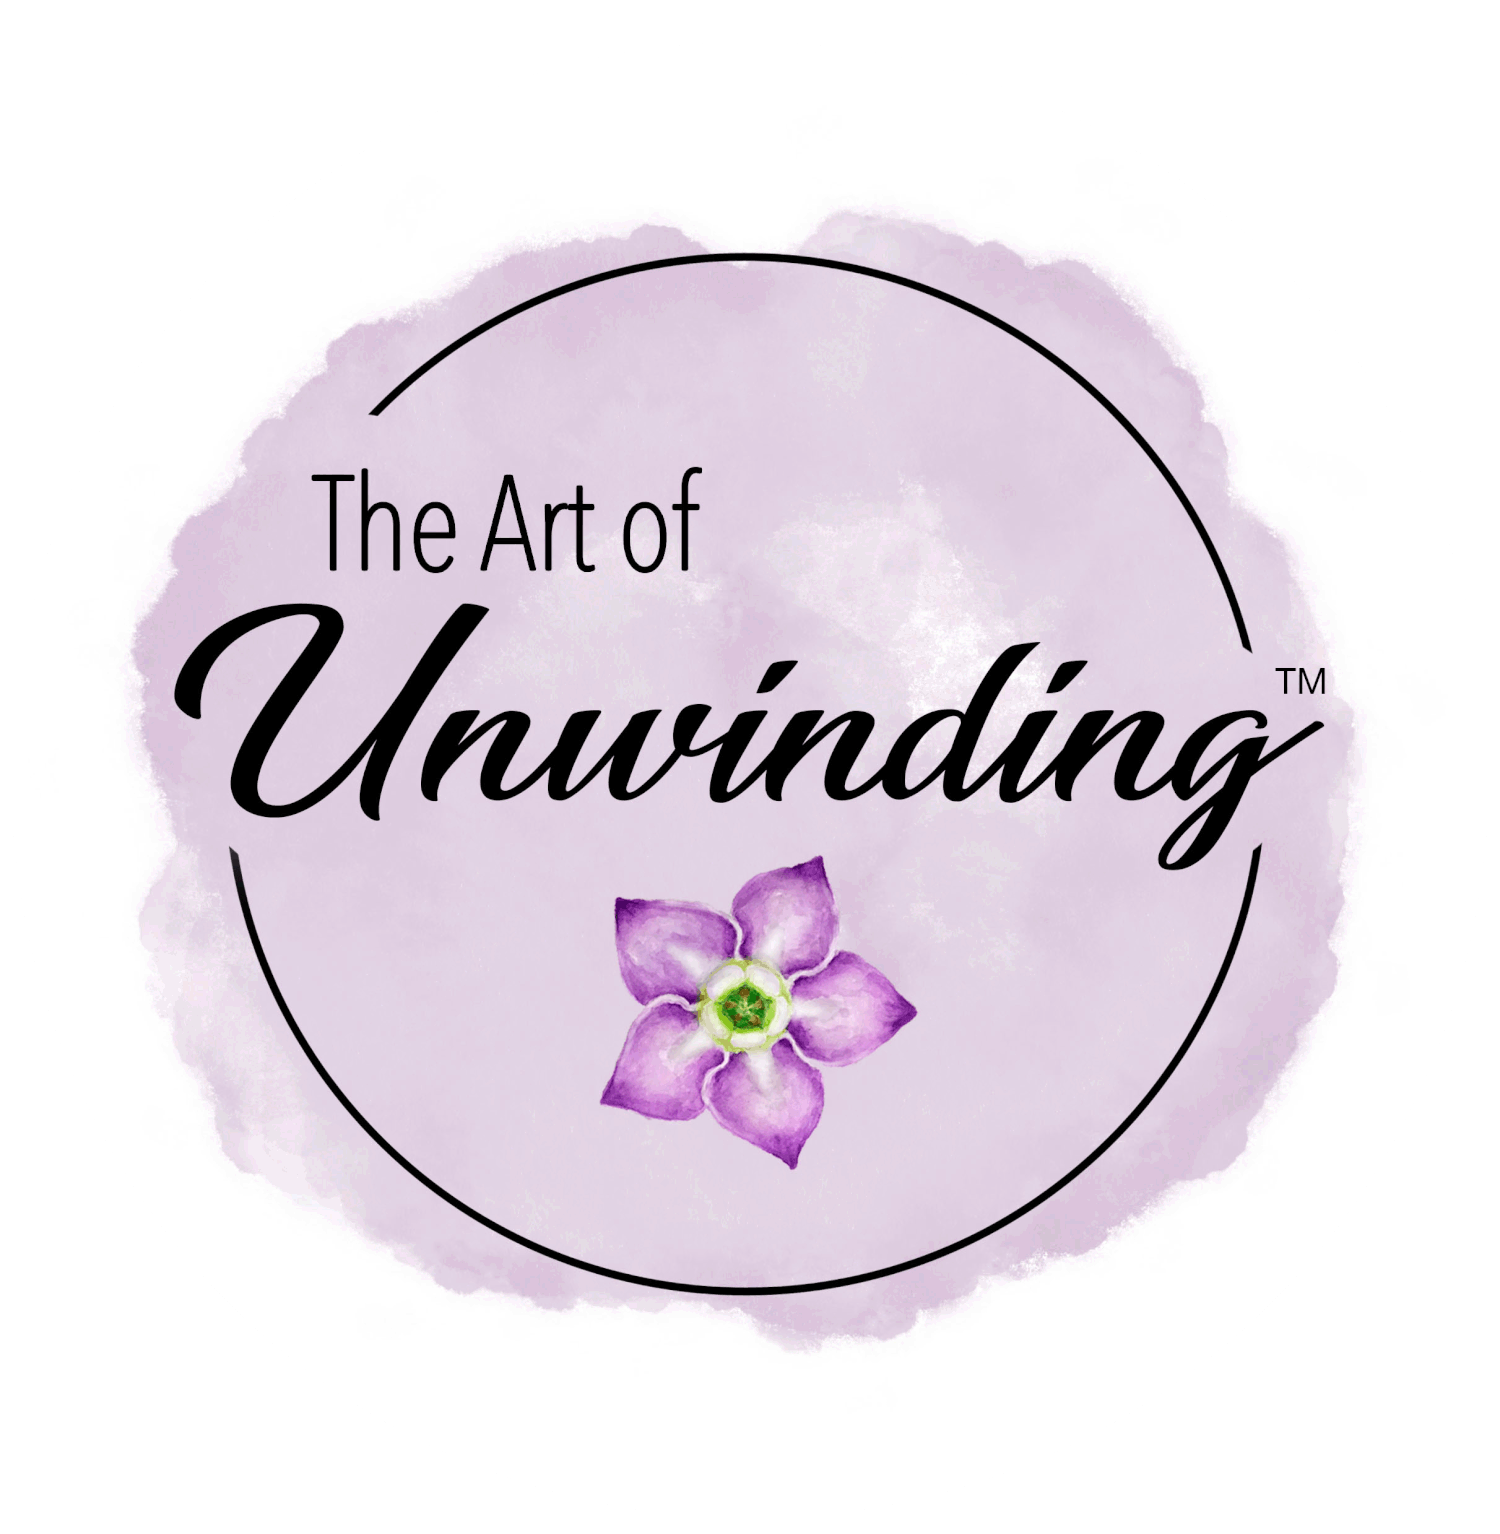 The Art of Unwinding